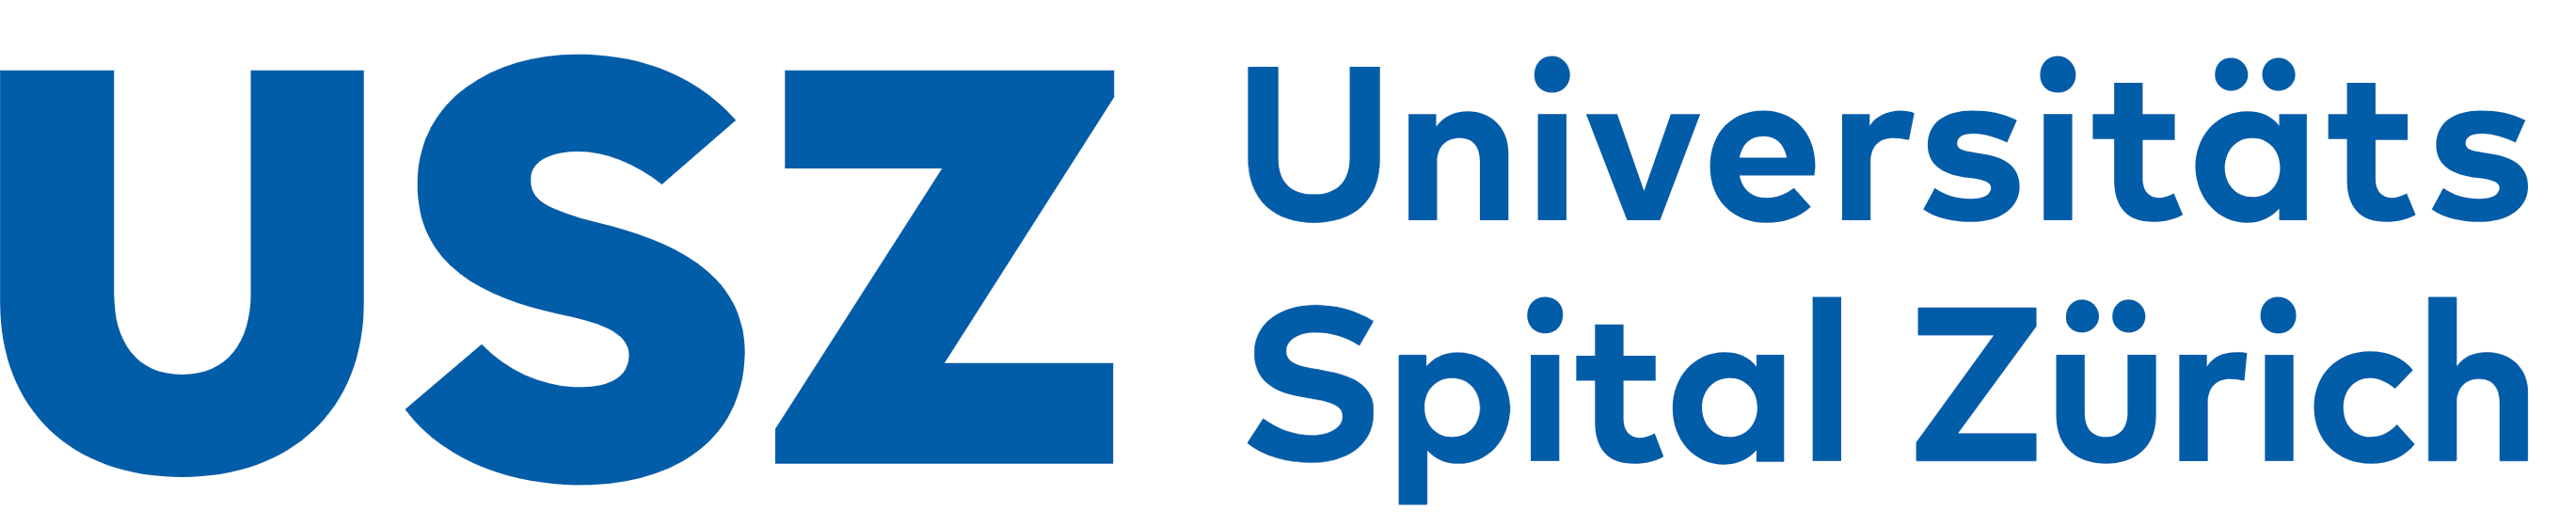 USZ Universitäts Spital Zürich